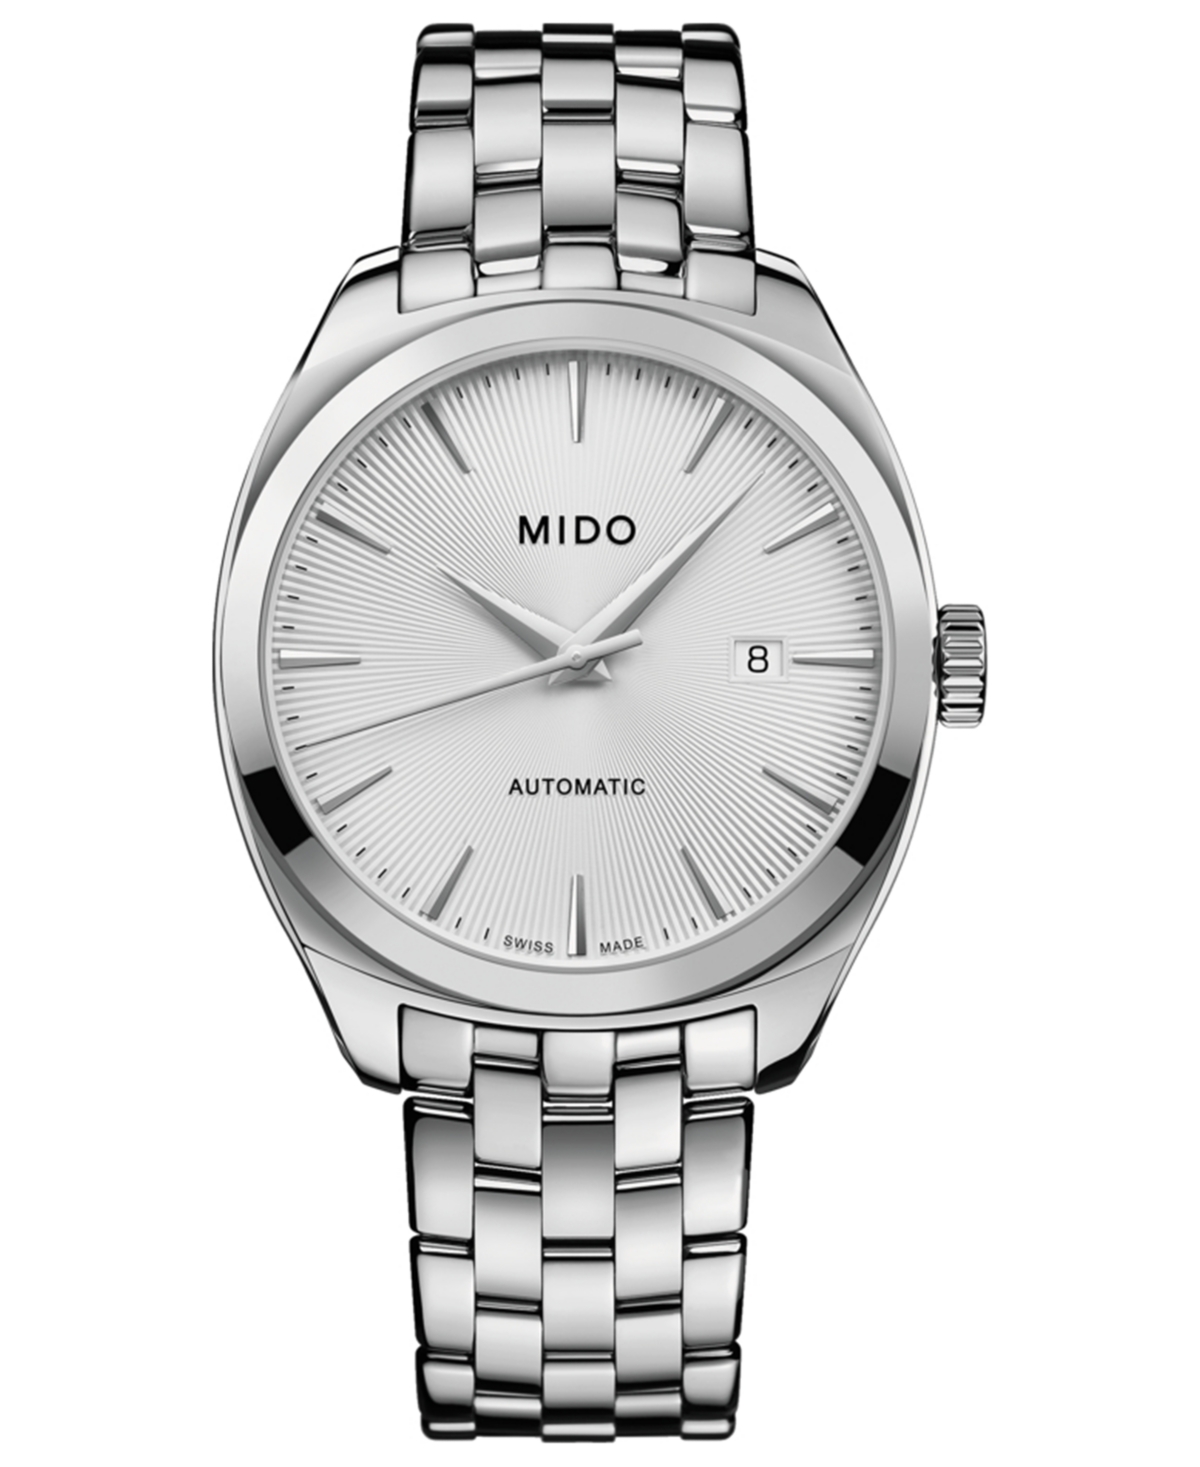 Mido Men's Swiss Automatic Belluna Royal Stainless Steel Bracelet Watch 41mm In Metallic